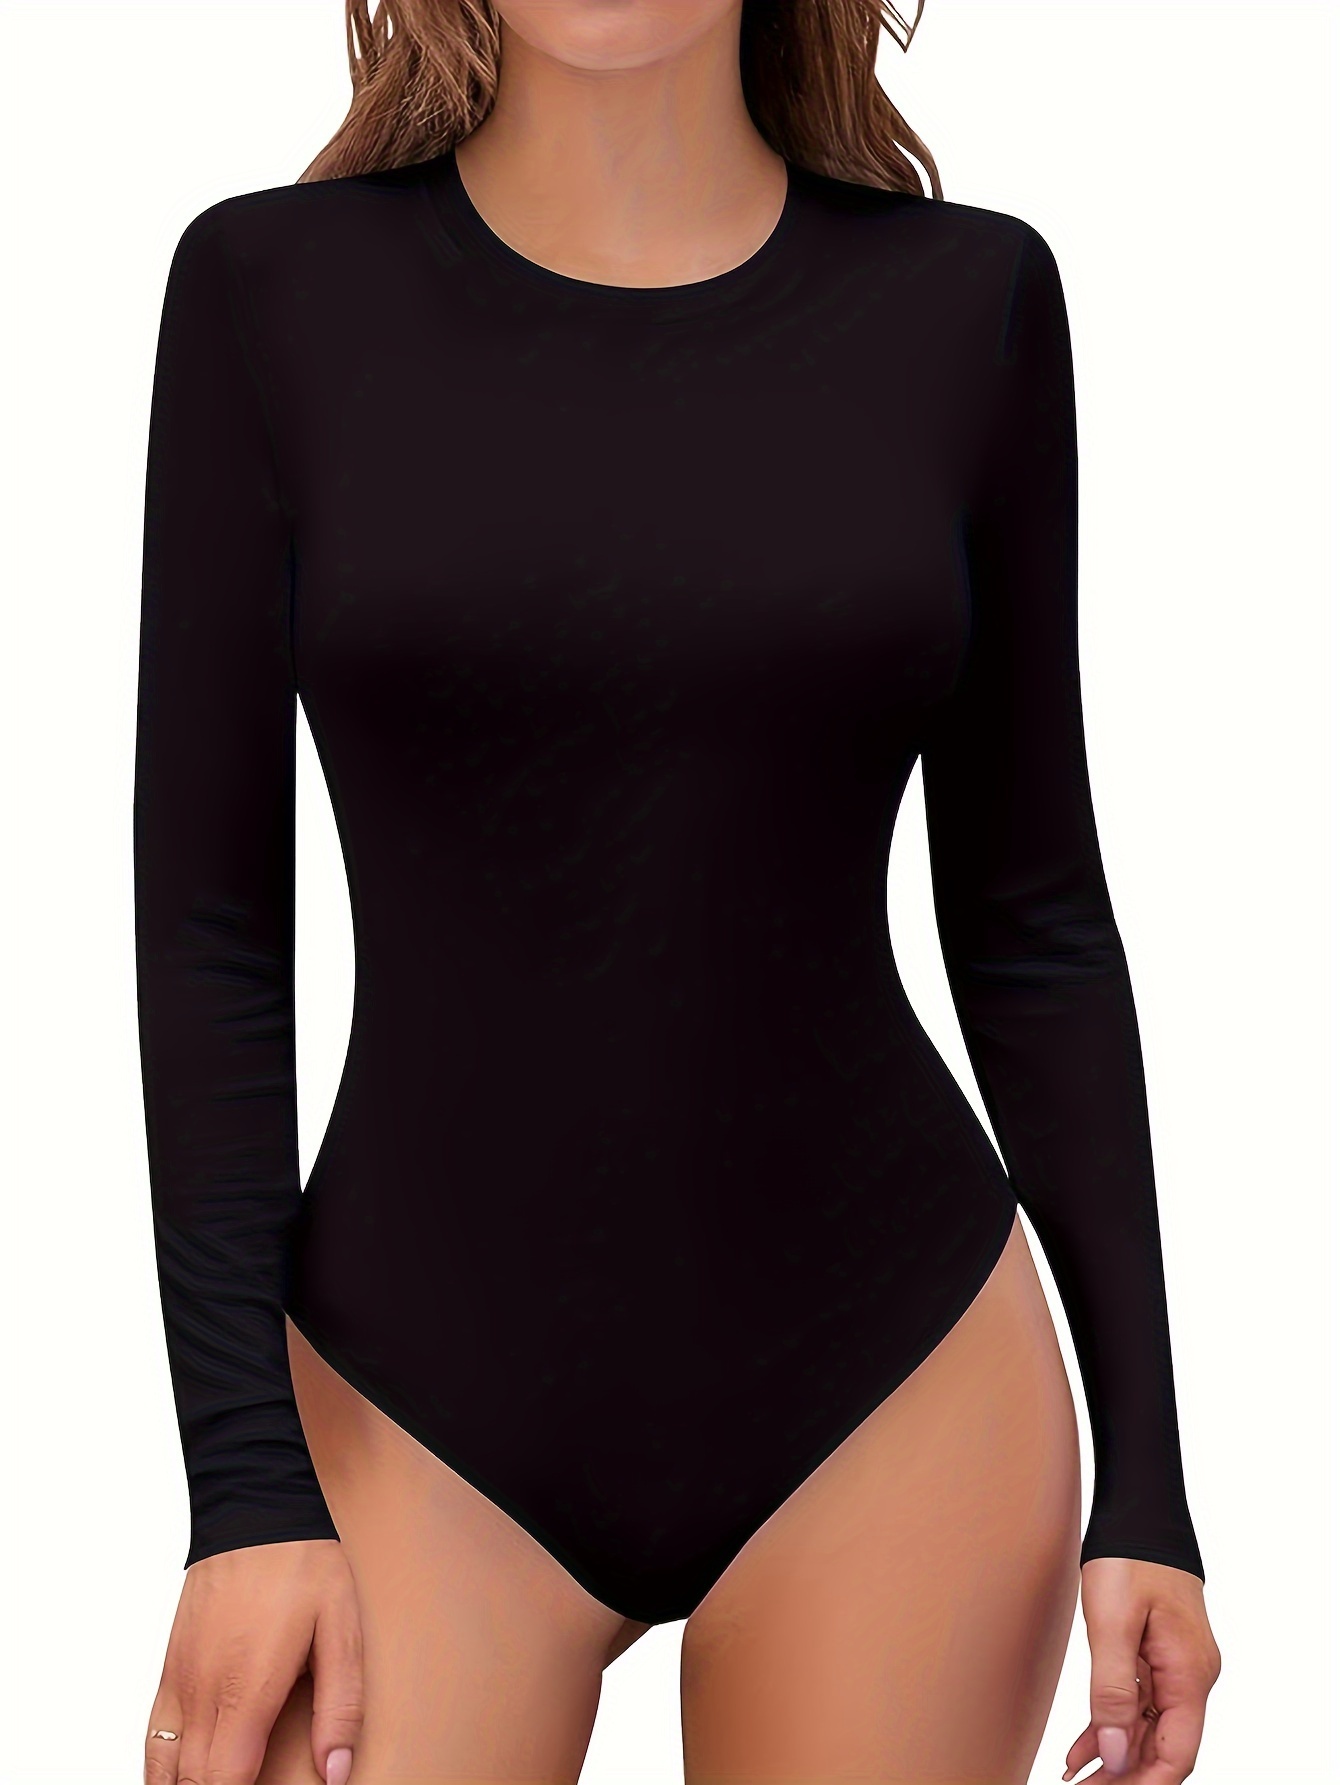 HOPLYNN 2 Pack Ribbed Short Sleeve Bodysuit for Women, Basic Scoop